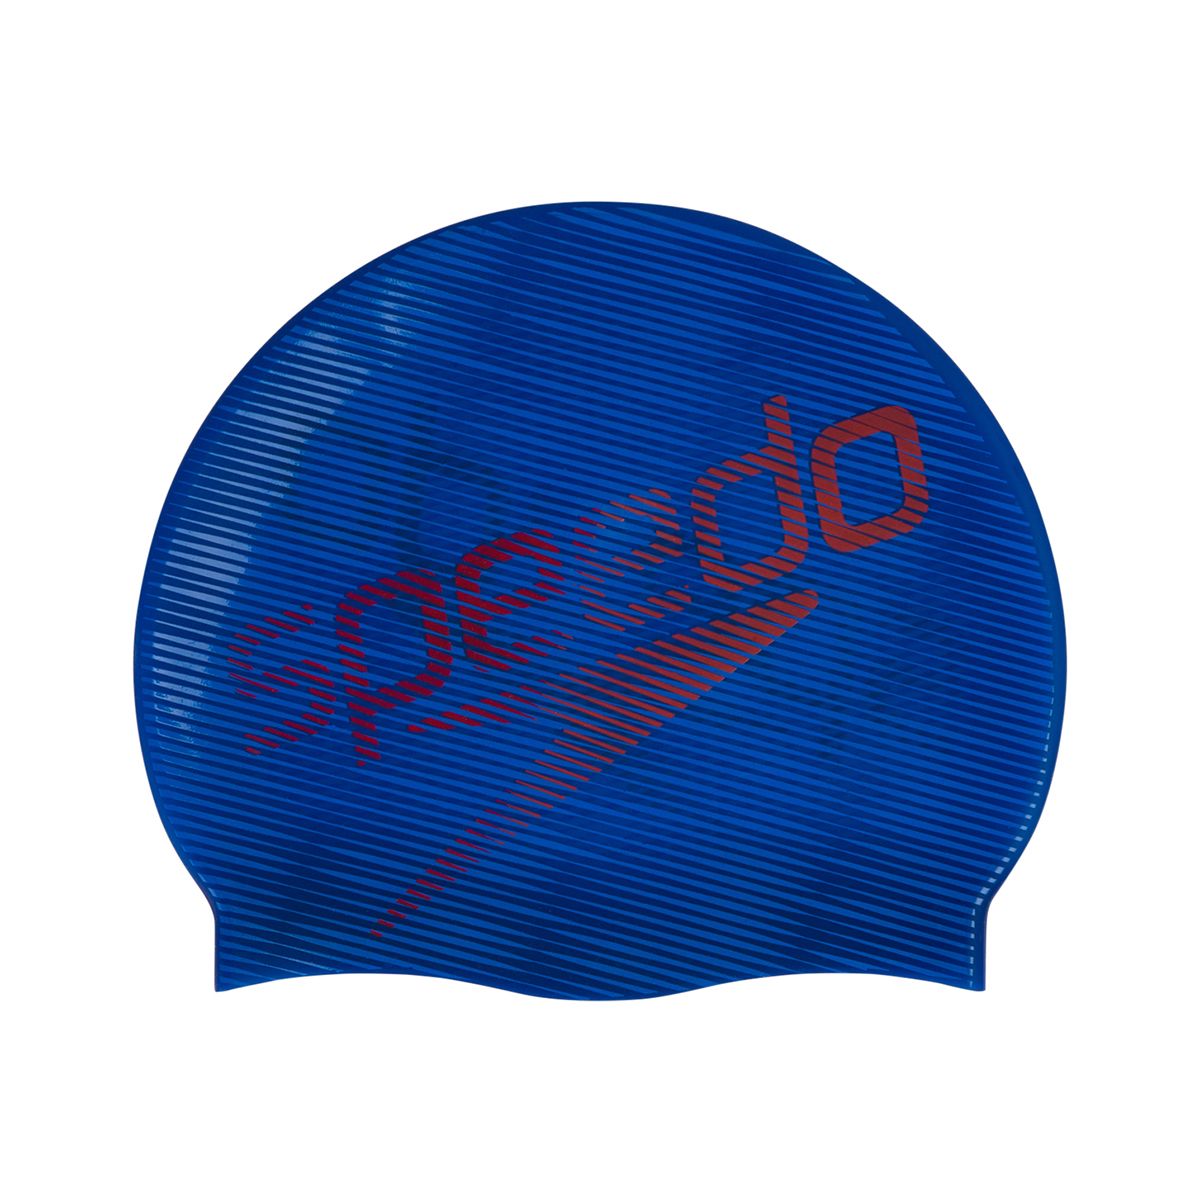 Speedo Adult Unisex Slogan Print Swimming Cap 